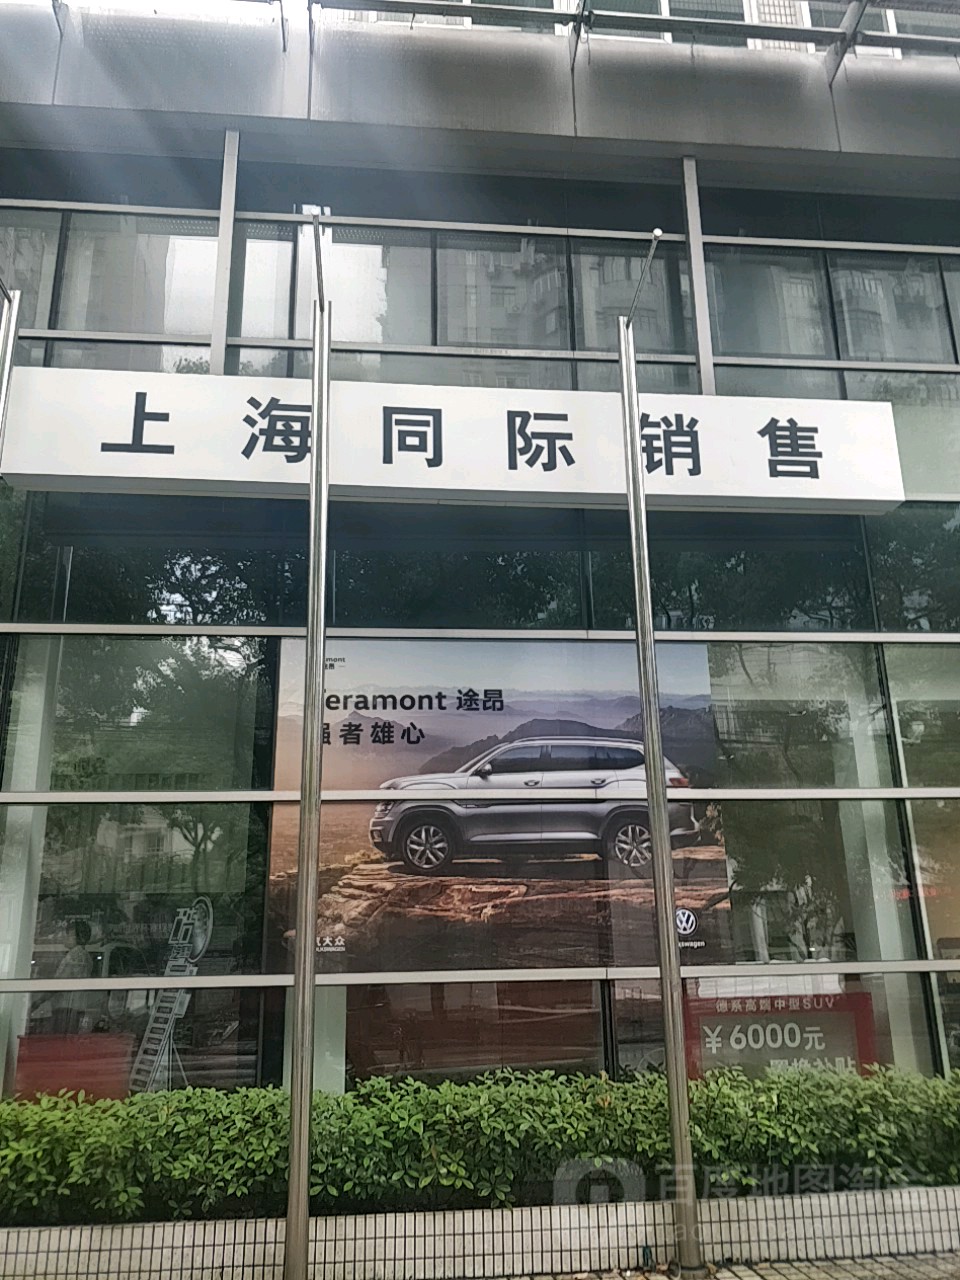 上海大眾汽車同濟銷售服務有限公司